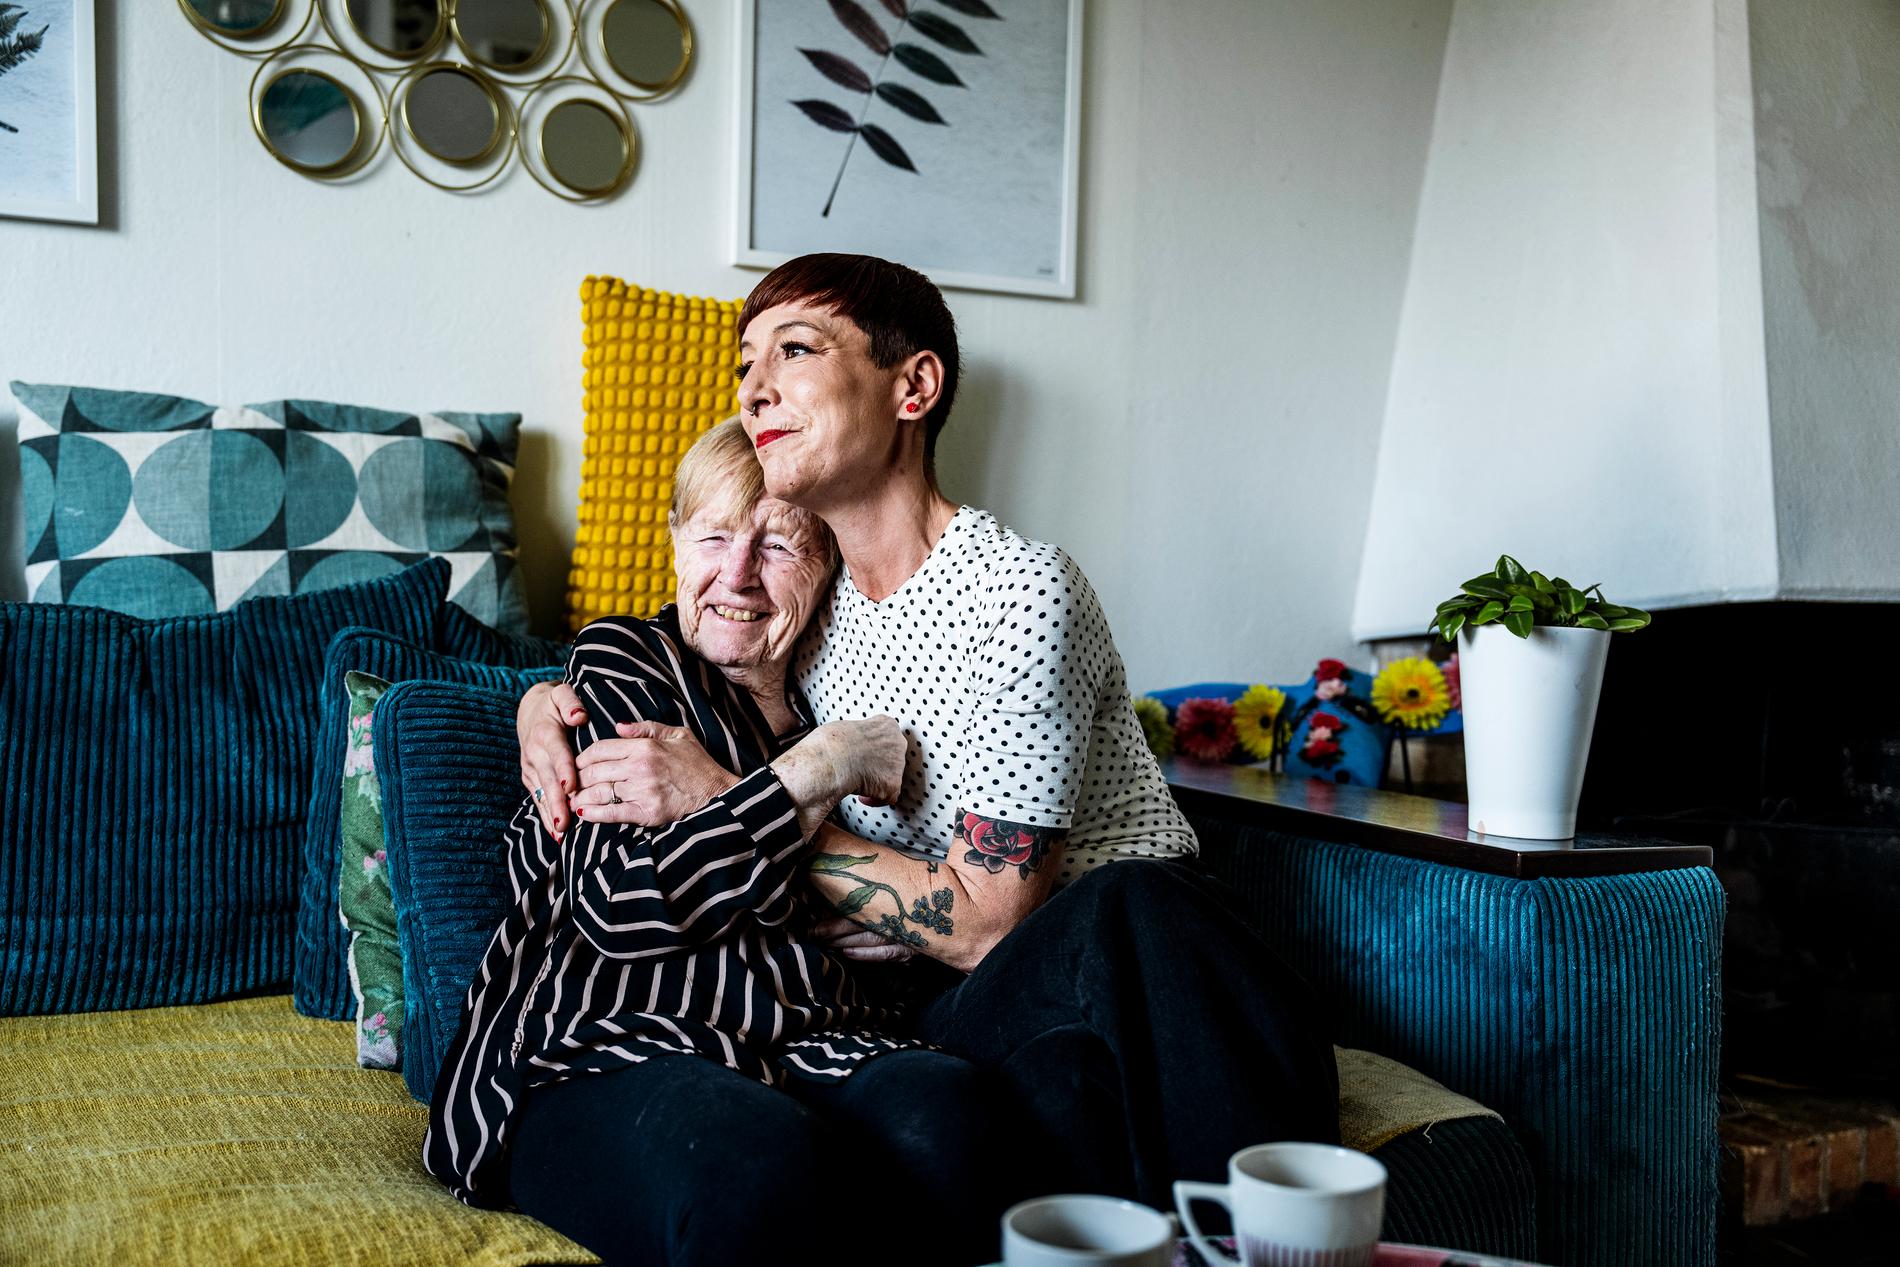 När Karin Persson flyttade in på ett demensboende fick hon flera nya läkemedel. Då blev hon förändrad. ”Jag märkte förändringar i mammas sätt att vara, att blickarna var tomma. Och så var hon nedstämd. Jag blev så rädd”, säger dottern Sara Soläng Zaki.